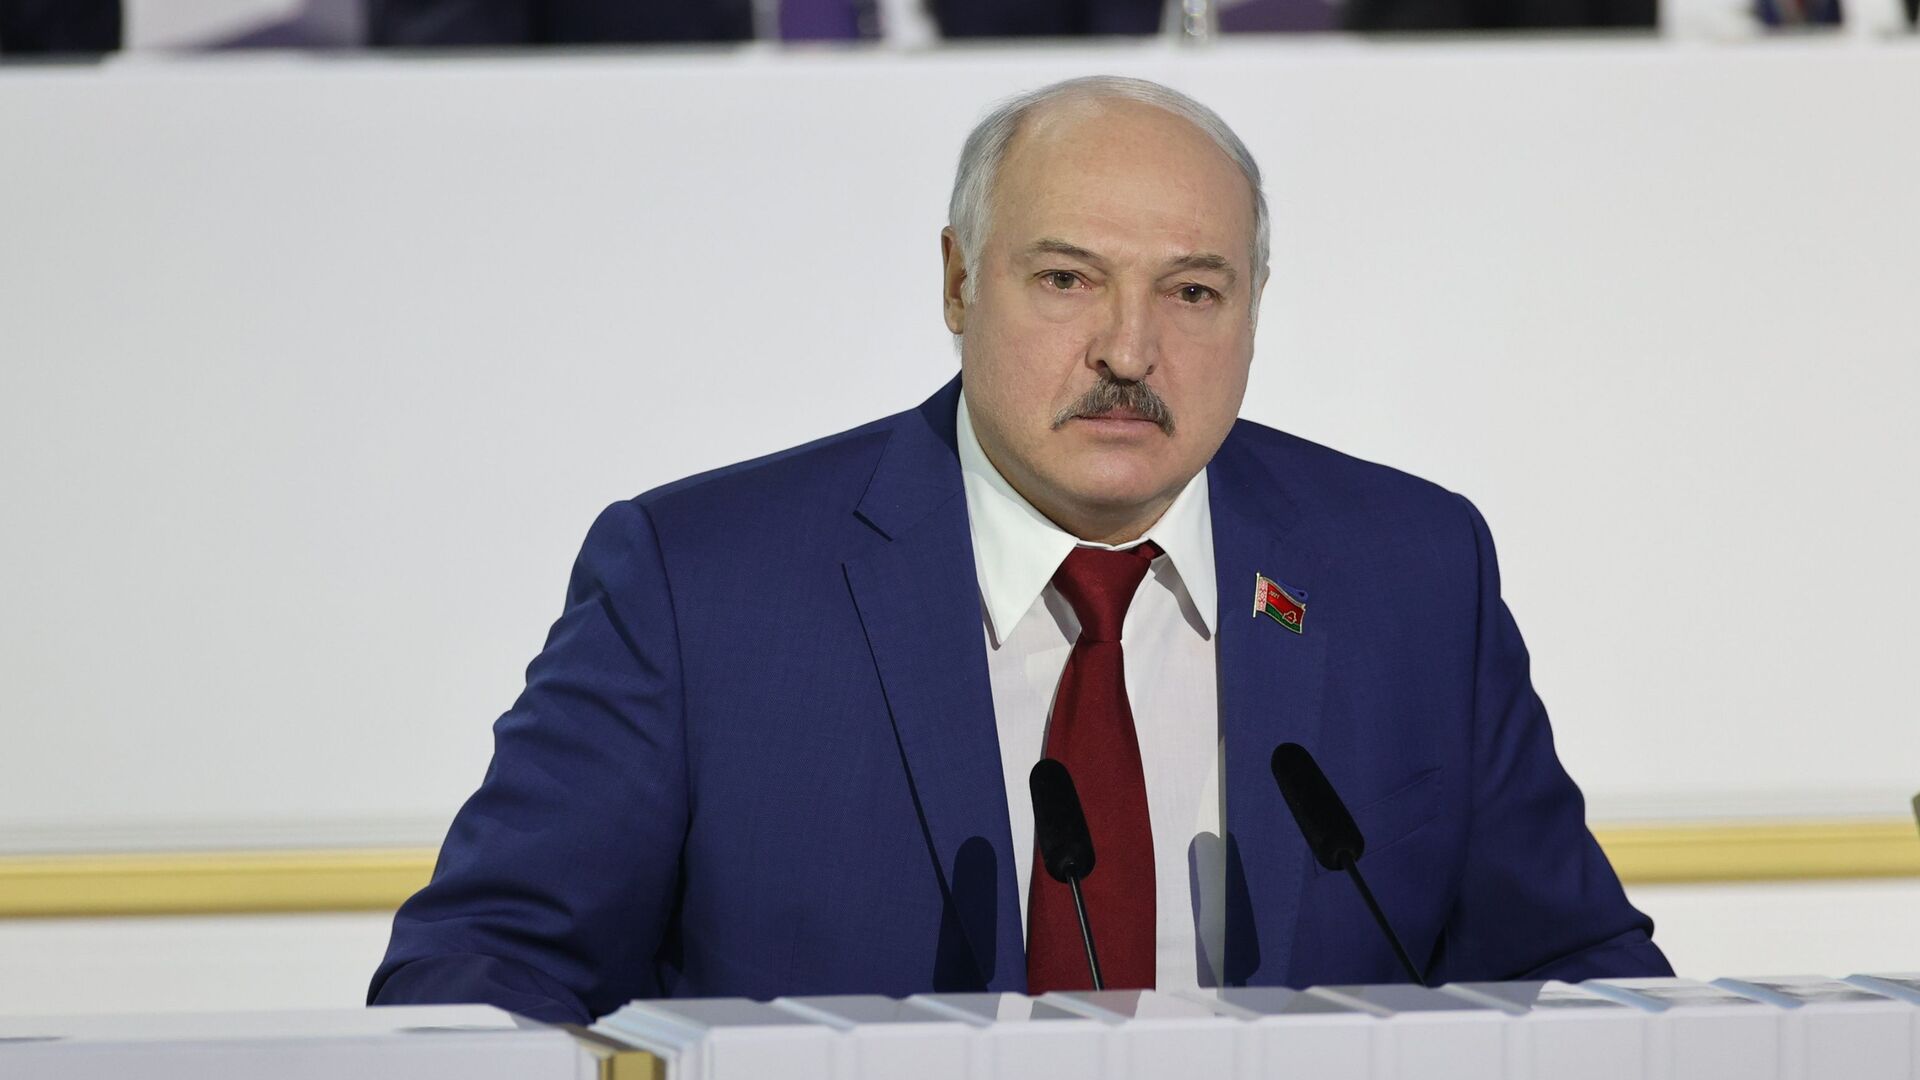 Председник Белорусије Александар Лукашенко - Sputnik Србија, 1920, 29.11.2021